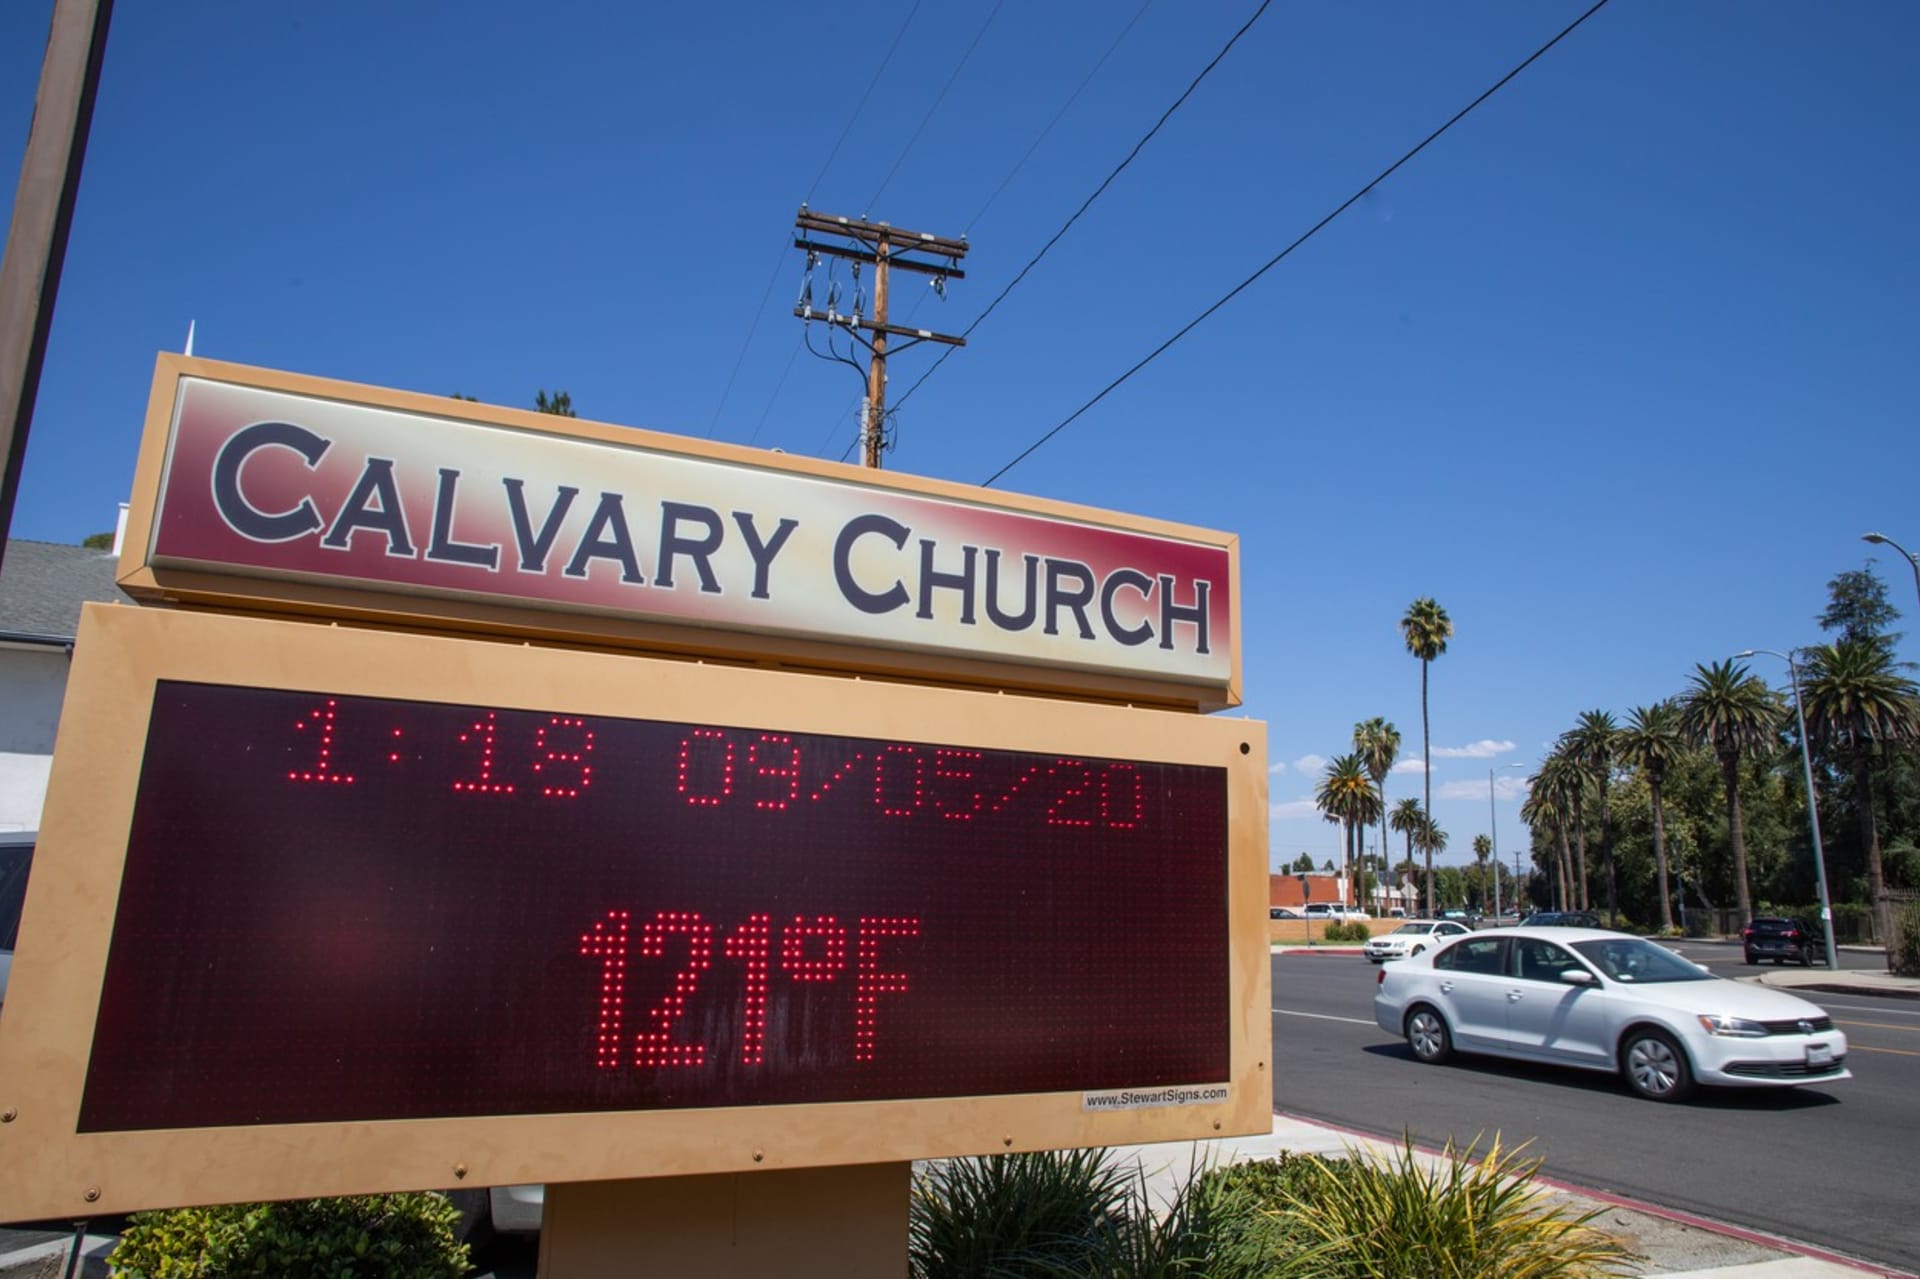 Teploměr ve Woodland Hills na předměstí Los Angeles ukazuje teplotu 121 stupňů Fahrenheita, v přepočtu 49,44 stupně Celsia. Jde o nejvyšší naměřenou teplotu ve městě.